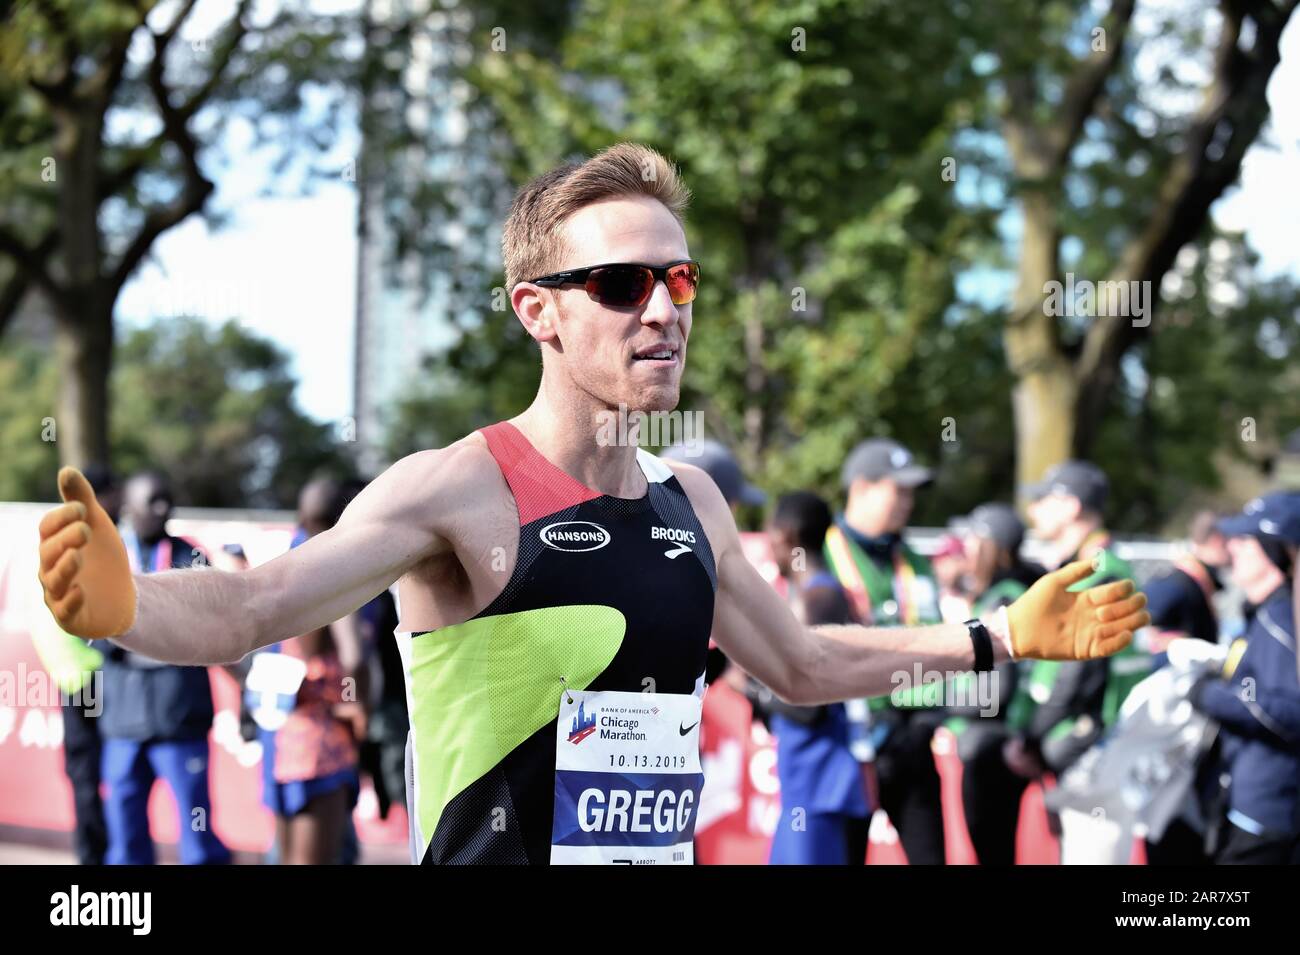 Chicago, Illinois, USA. Brendan Greg aus den Vereinigten Staaten begrüßte den Zieleinlauf mit offenen Armen beim Chicago-Marathon 2019. Stockfoto